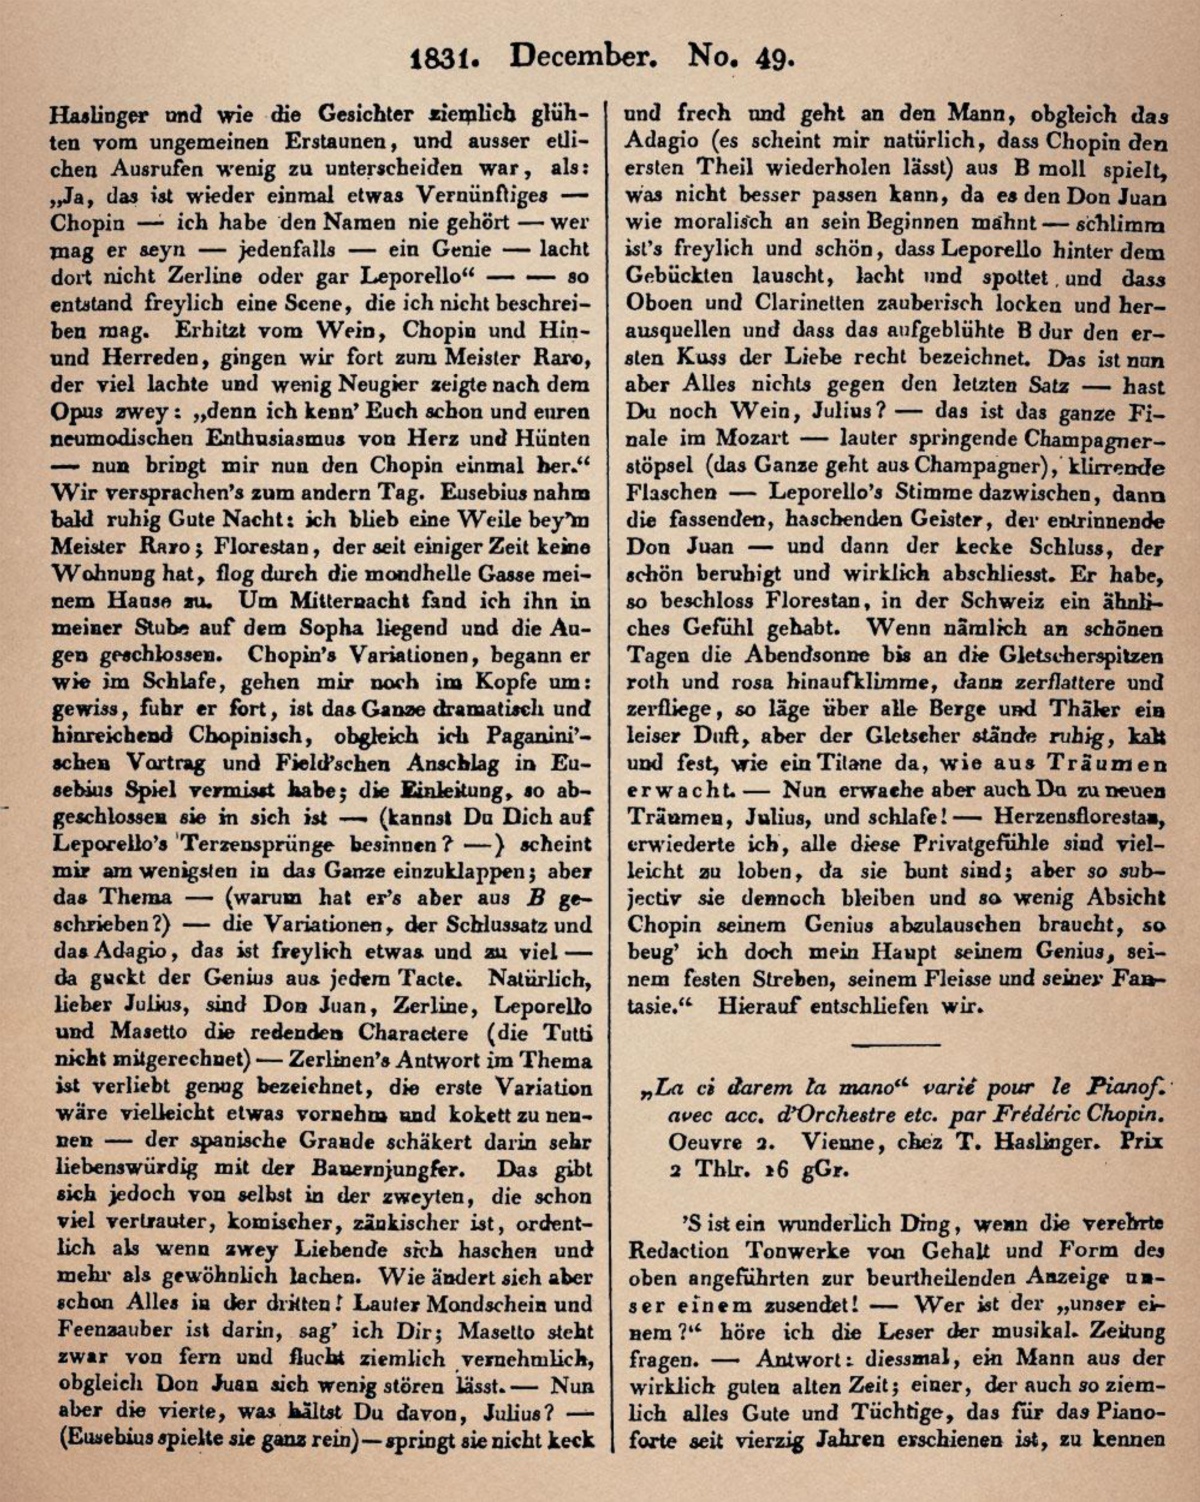 Texte de Robert Schumann sur l'opus 2 de Chopin publié dans l'«Allgemeine Musikalische Zeitung» du 07 décembre 1831